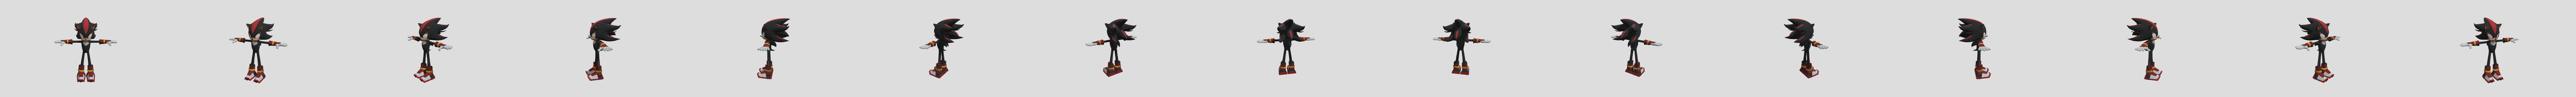 Sonicboom 3D models - Sketchfab